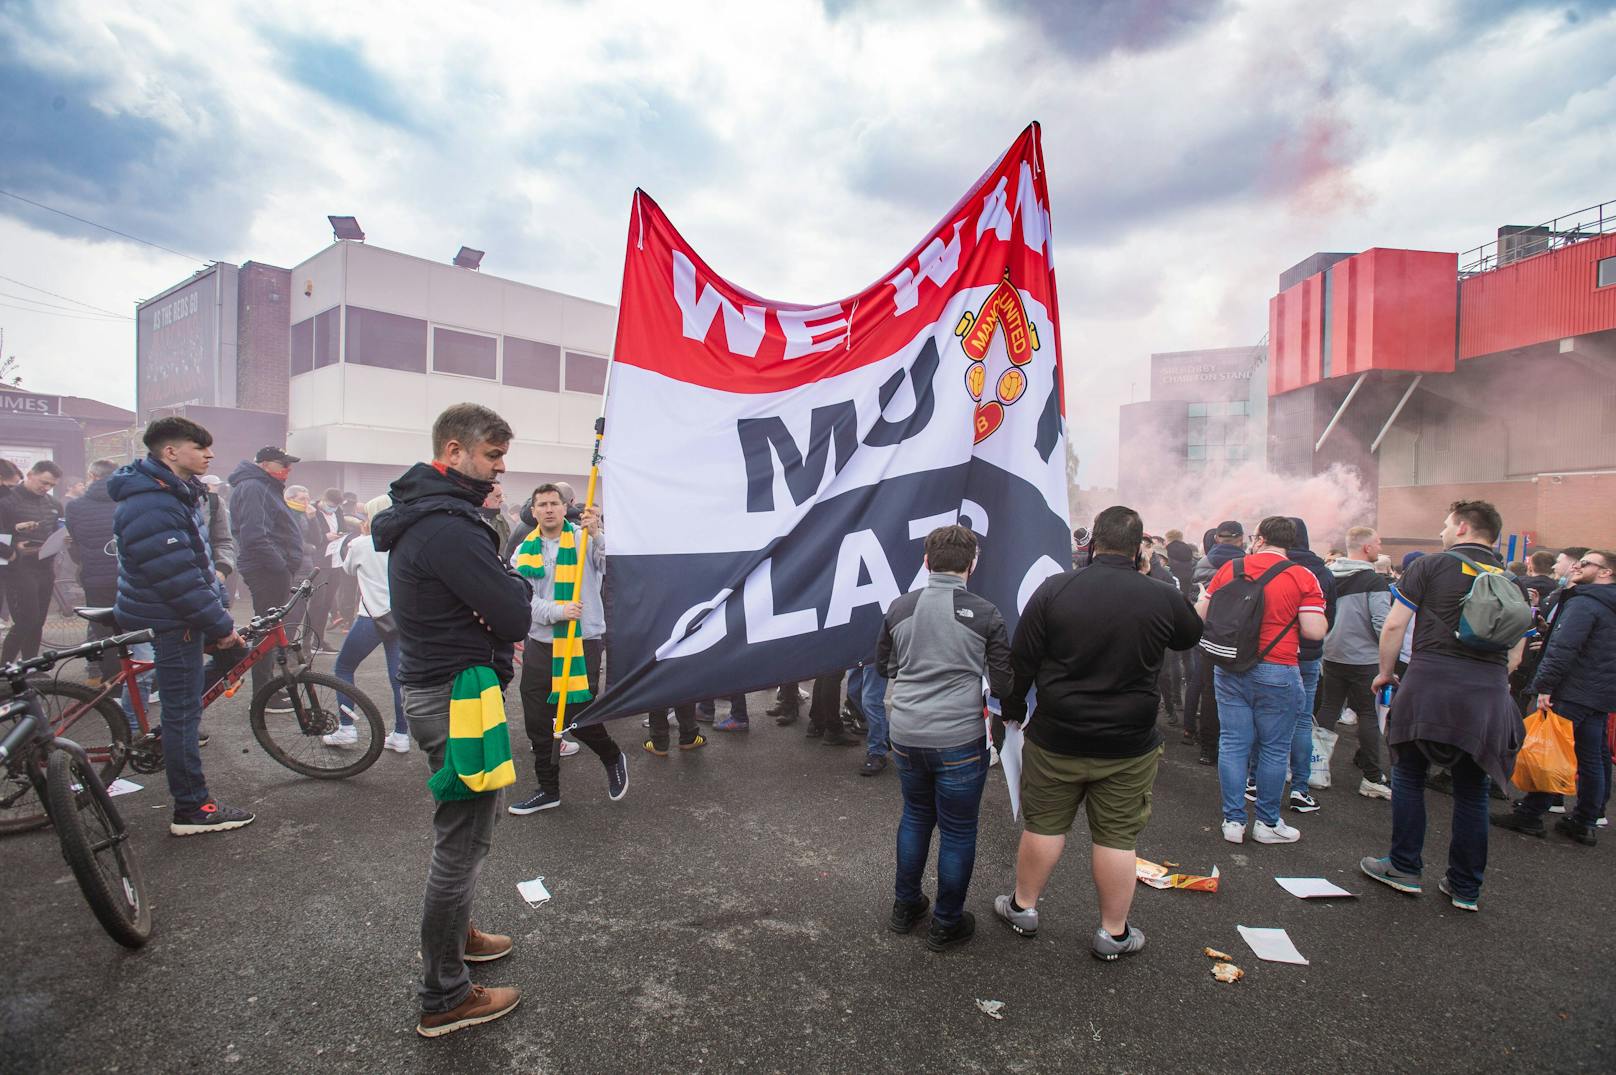 Tausende Manchester-United-Fans protestieren rund um das Old Trafford. Einige verschaffen sich sogar Zugang und stürmen den Rasen.